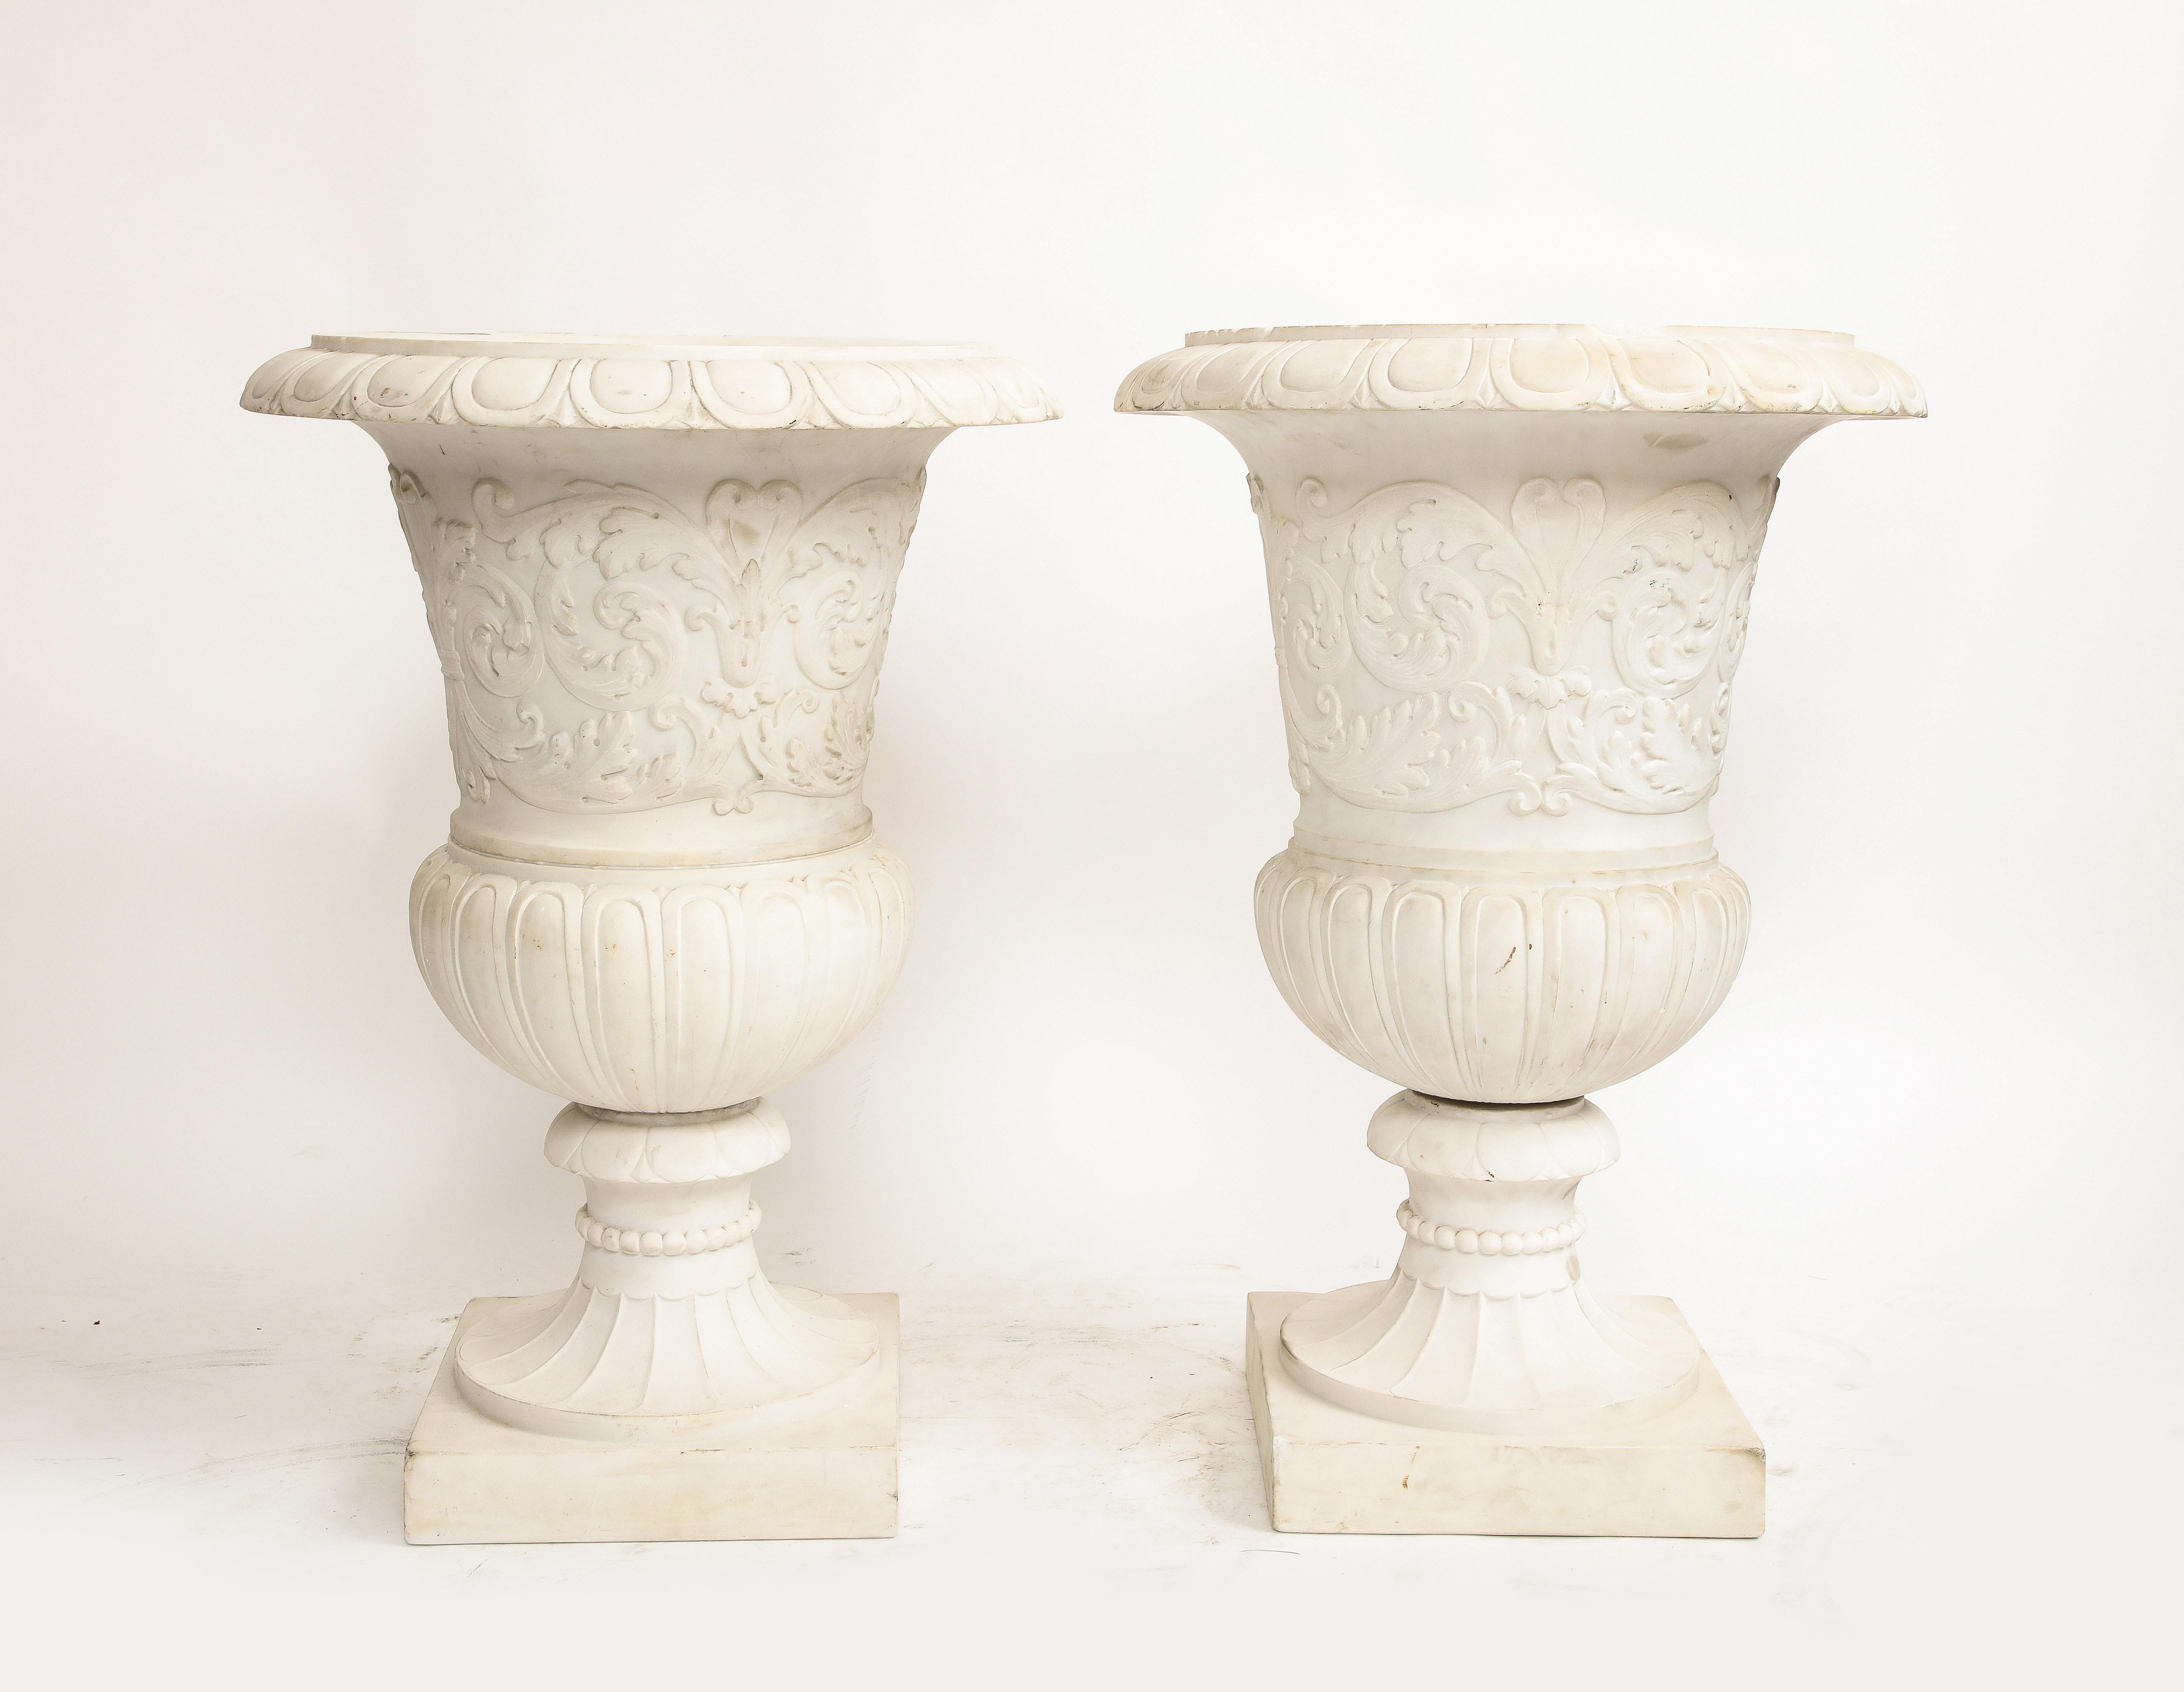 Ein prächtiges Paar italienischer Medici-Vasen aus Carrara-Marmor mit neoklassischen Reliefmotiven.  Mit einer beeindruckenden Höhe von 30 Zoll sind diese Vasen ein Beweis für die tadellose Kunstfertigkeit, die dem Carrara-Marmor eigen ist.
Die